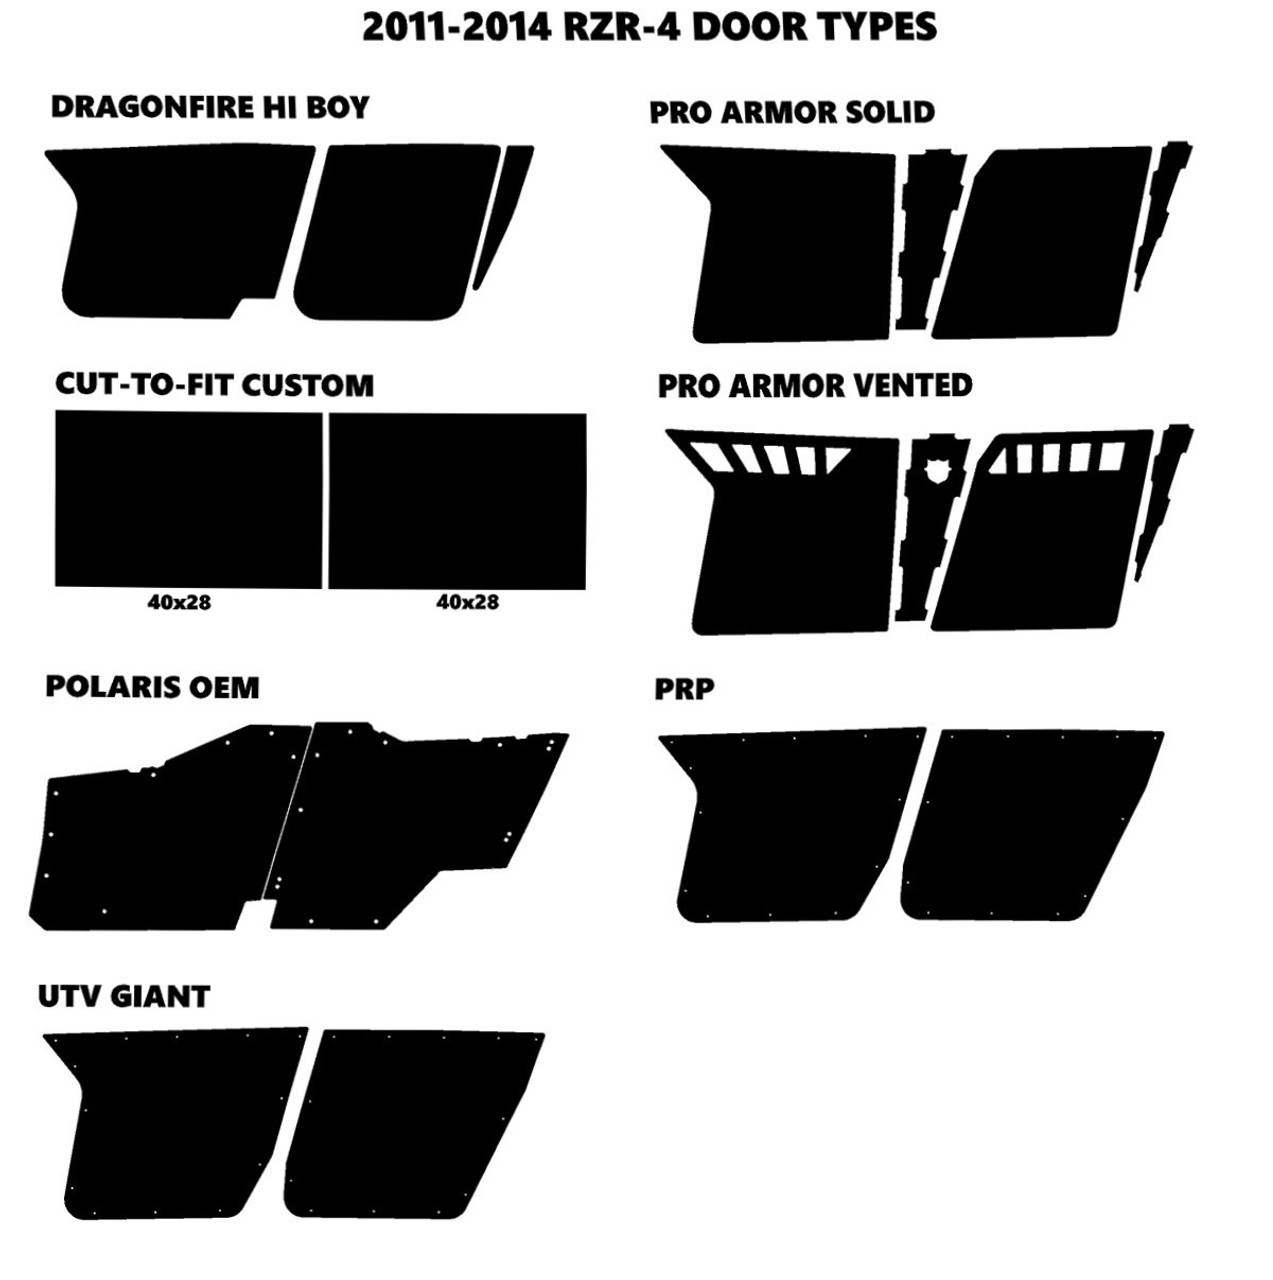 RZR4-900 4-SEATER 2011-2014 Design V6501